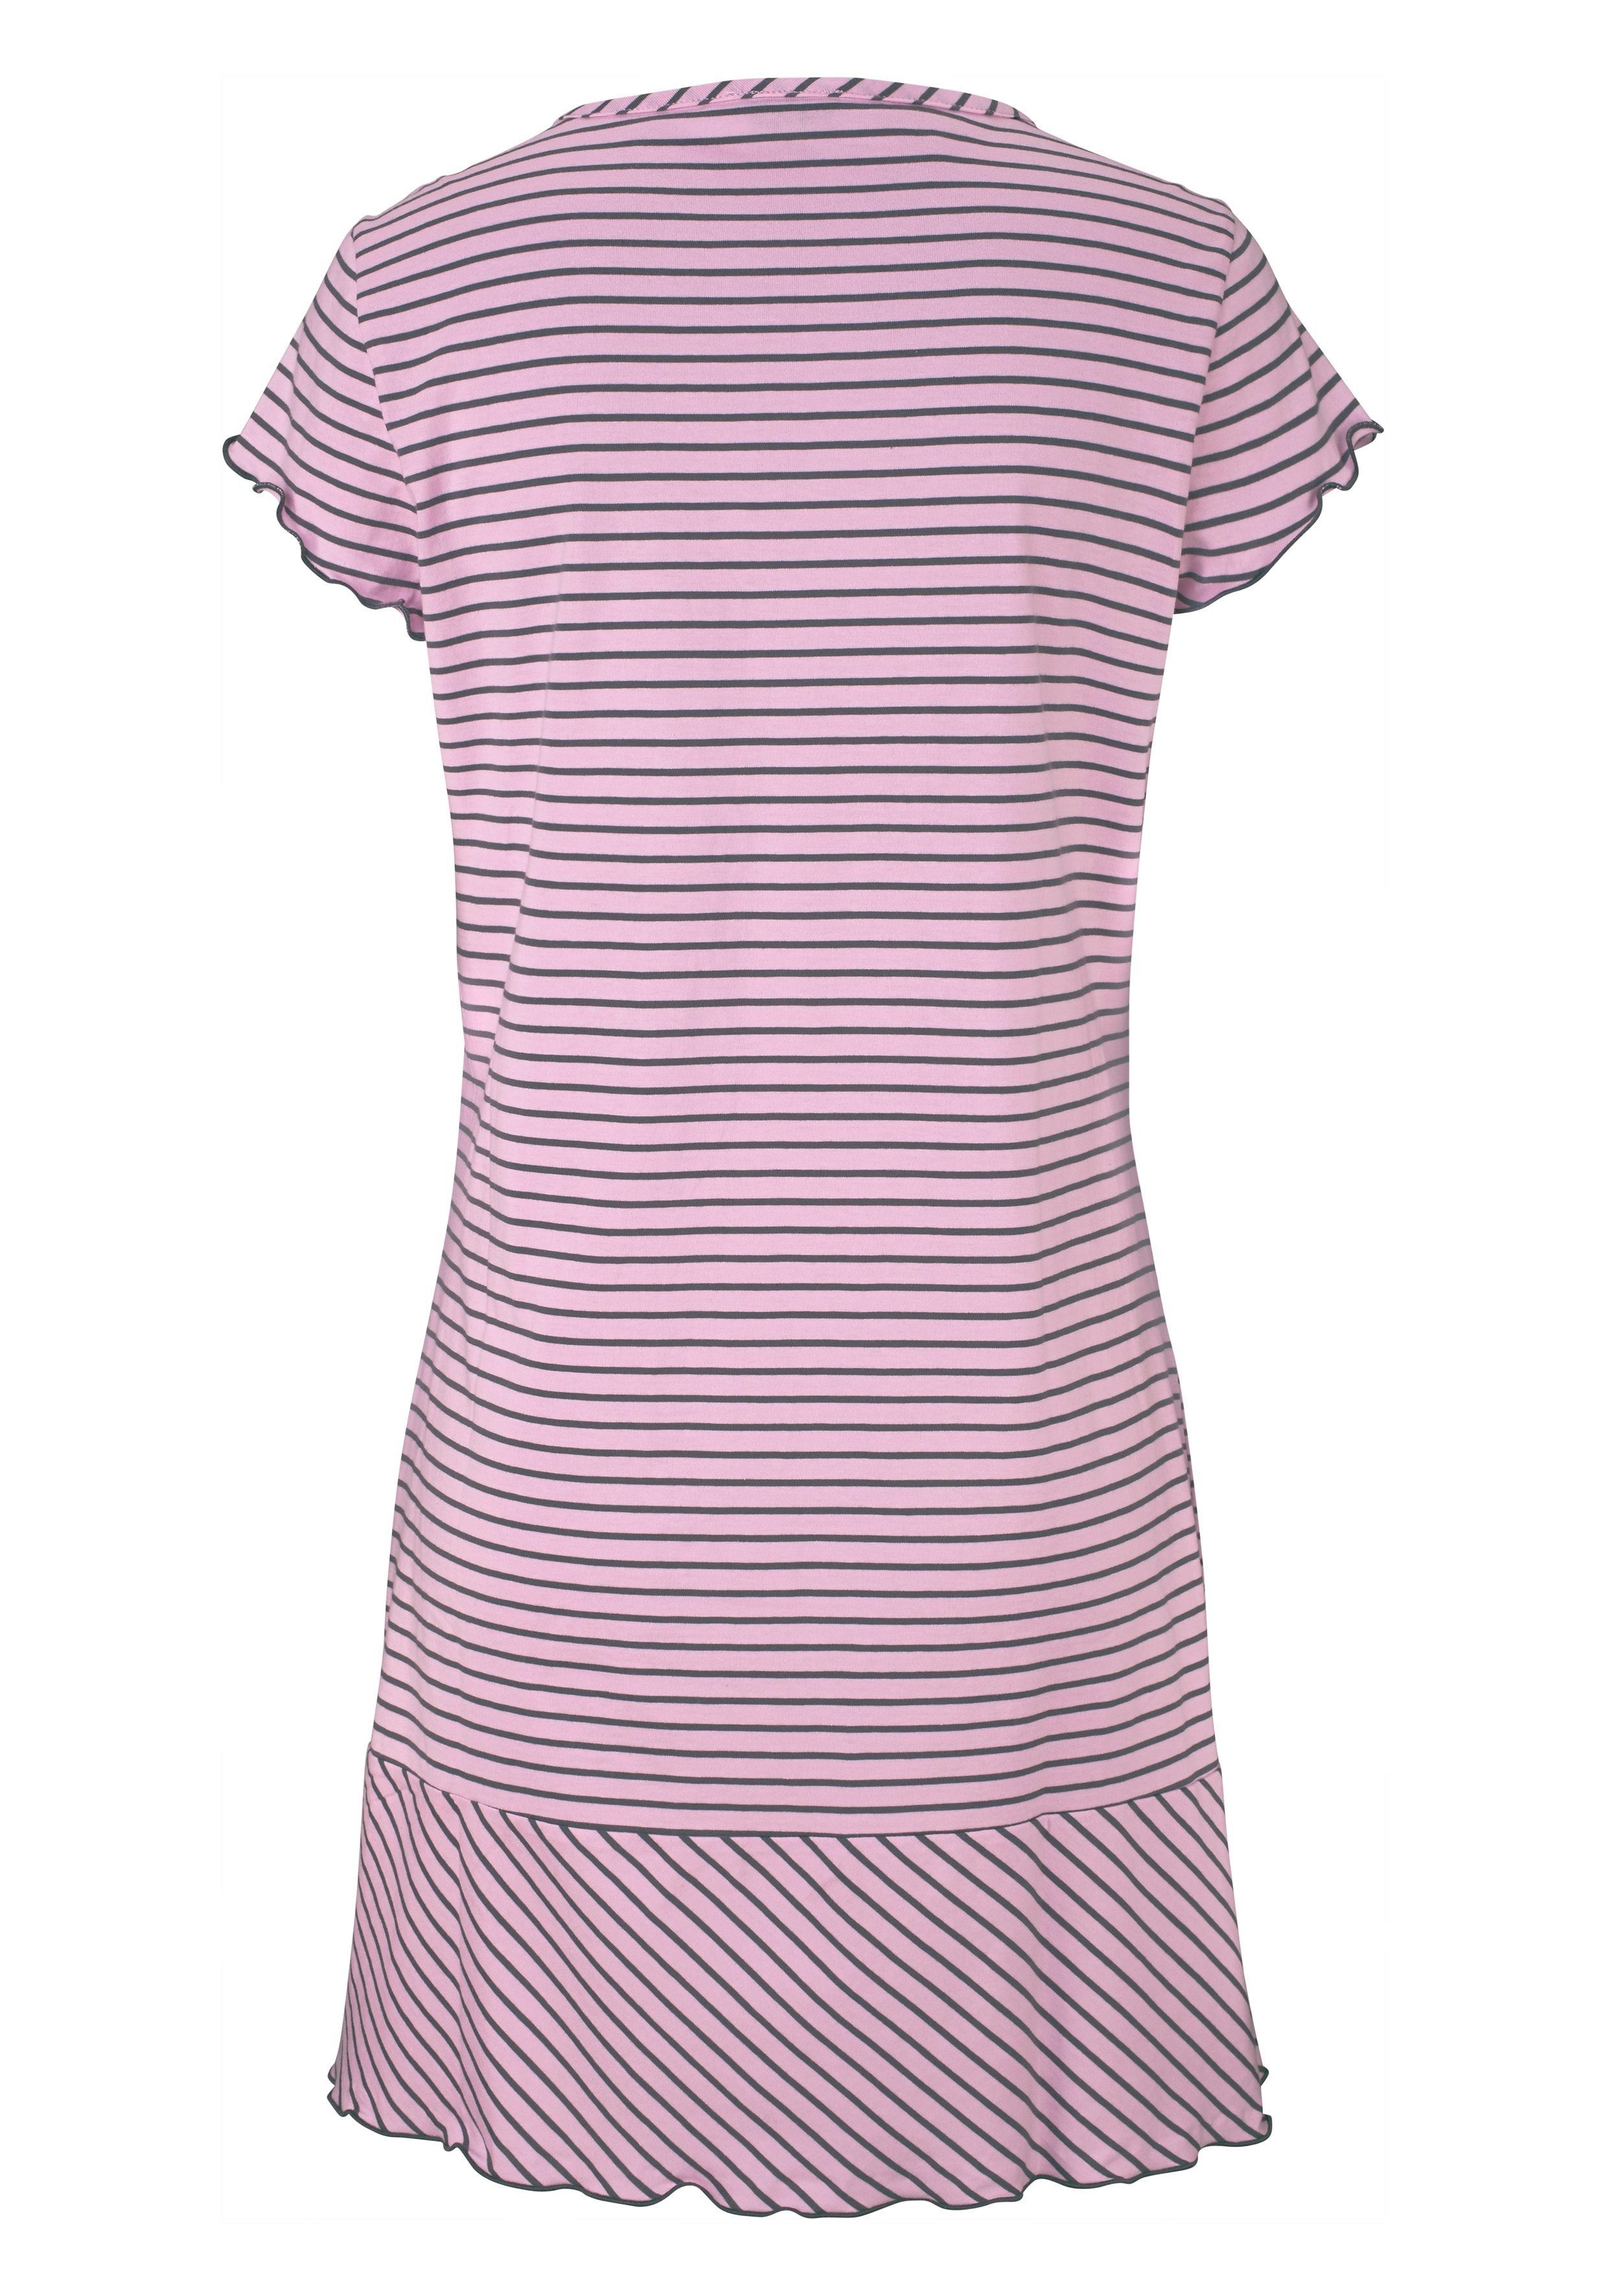 Streifenlook in H.I.S Nachthemd Kräuselrändern rosa-geringelt süßem mit